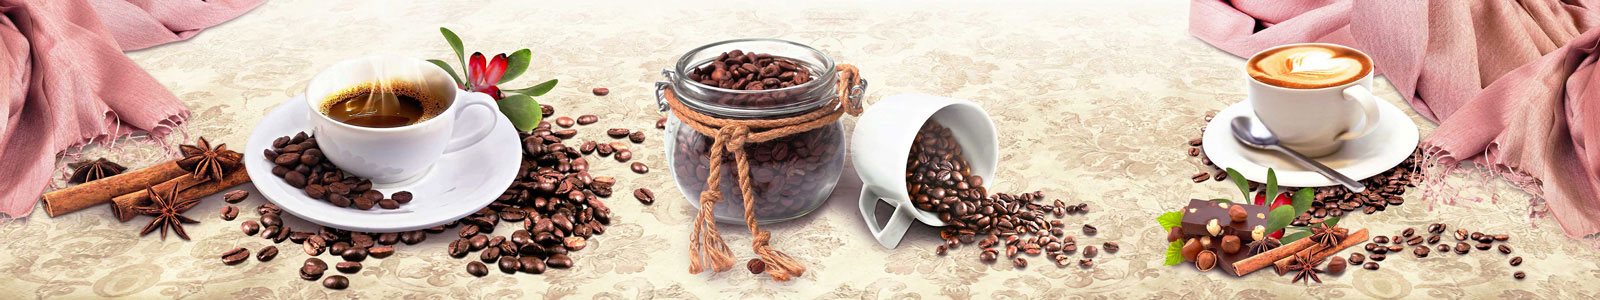 №4221 - Ароматный кофе и свежесмолотые зерна